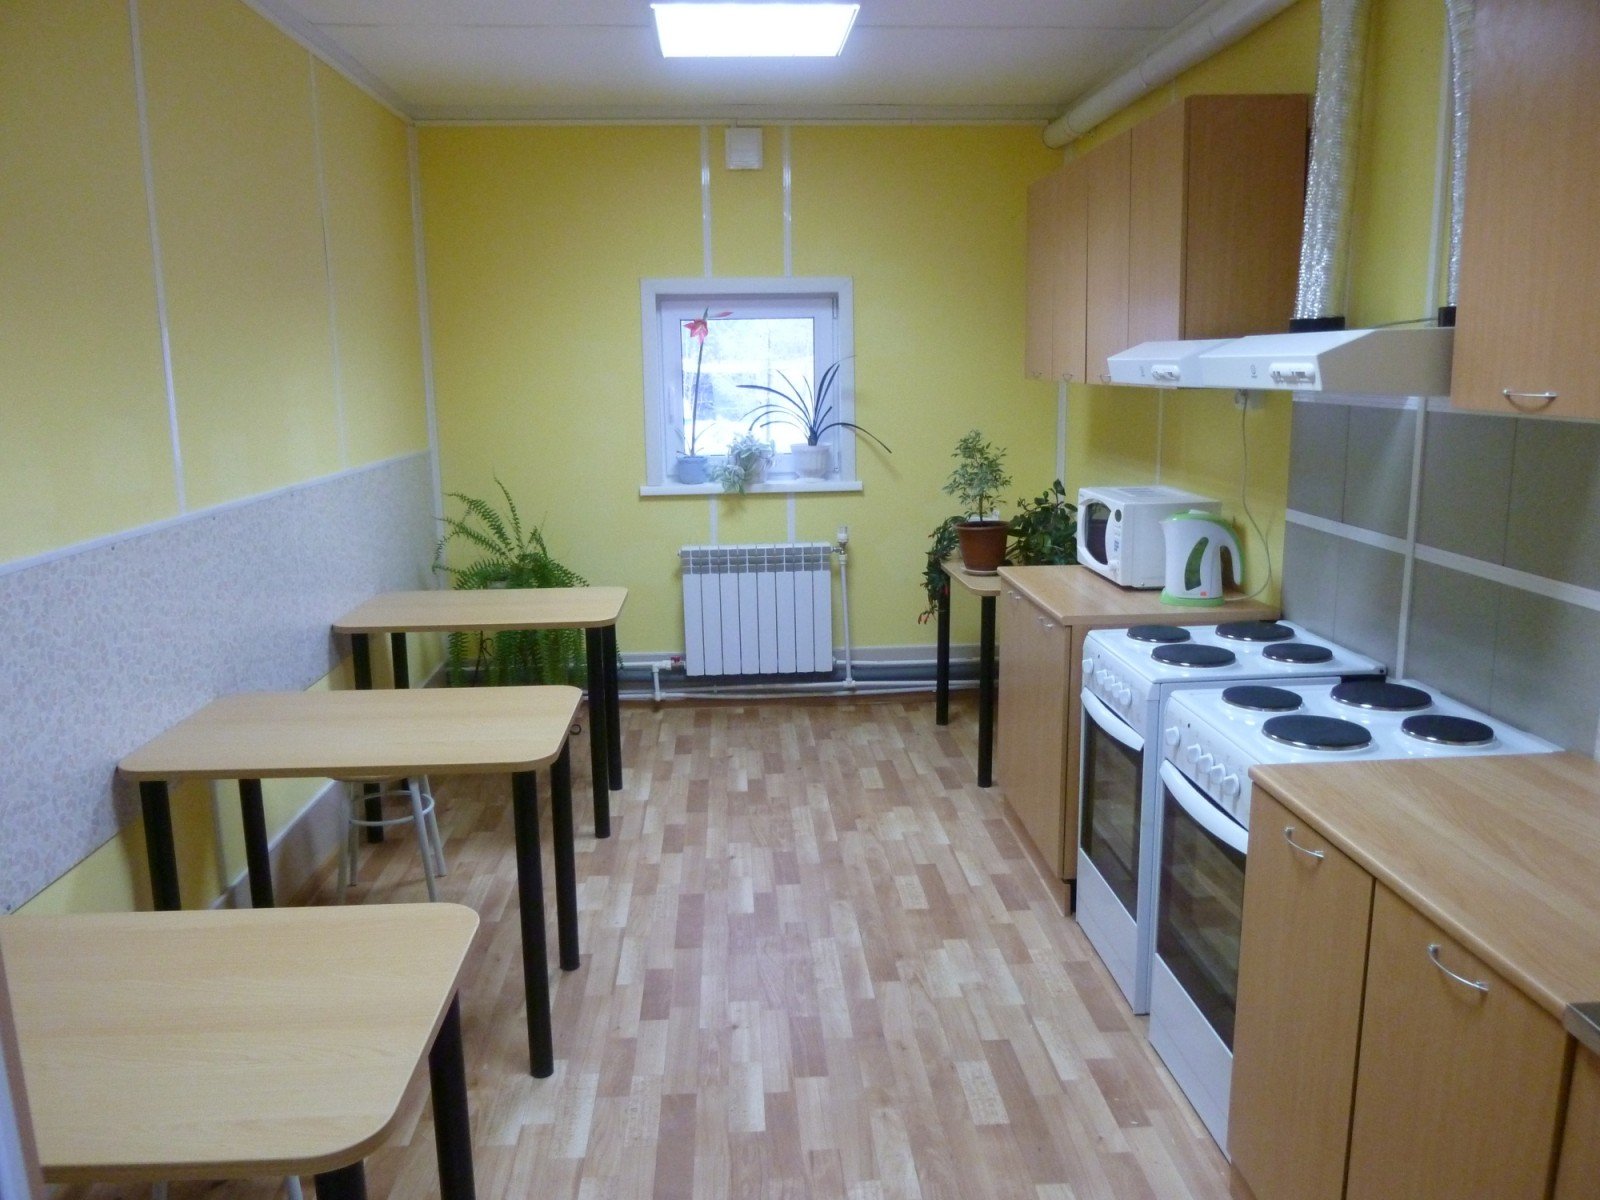 Общая кухня в общежитии